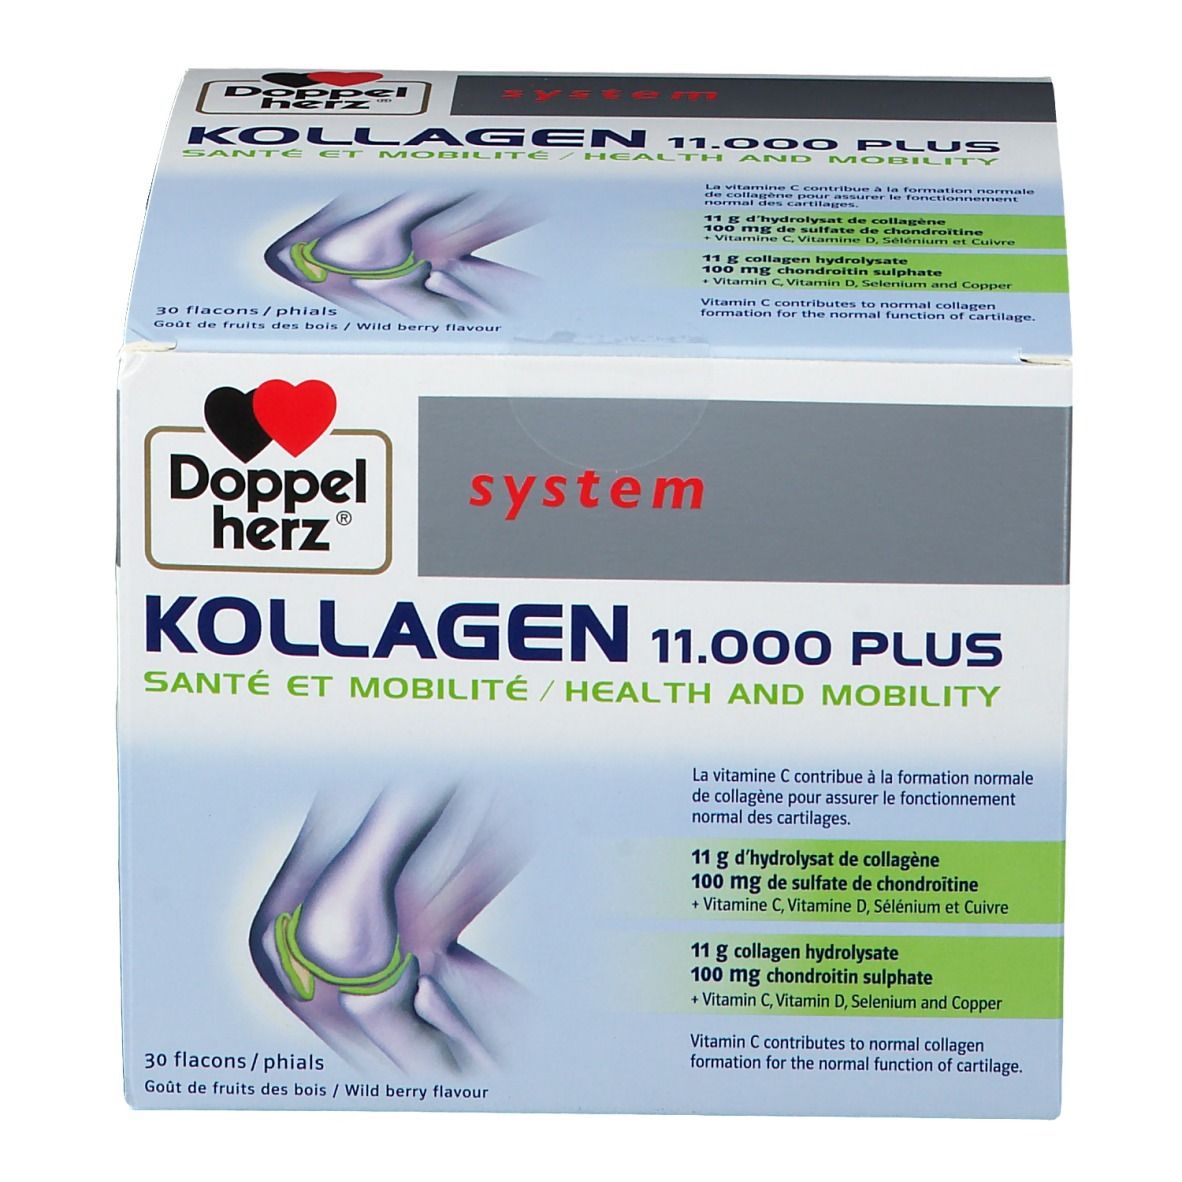 Doppelherz® system Kollagen 11.000 Plus Santé + Mobilité